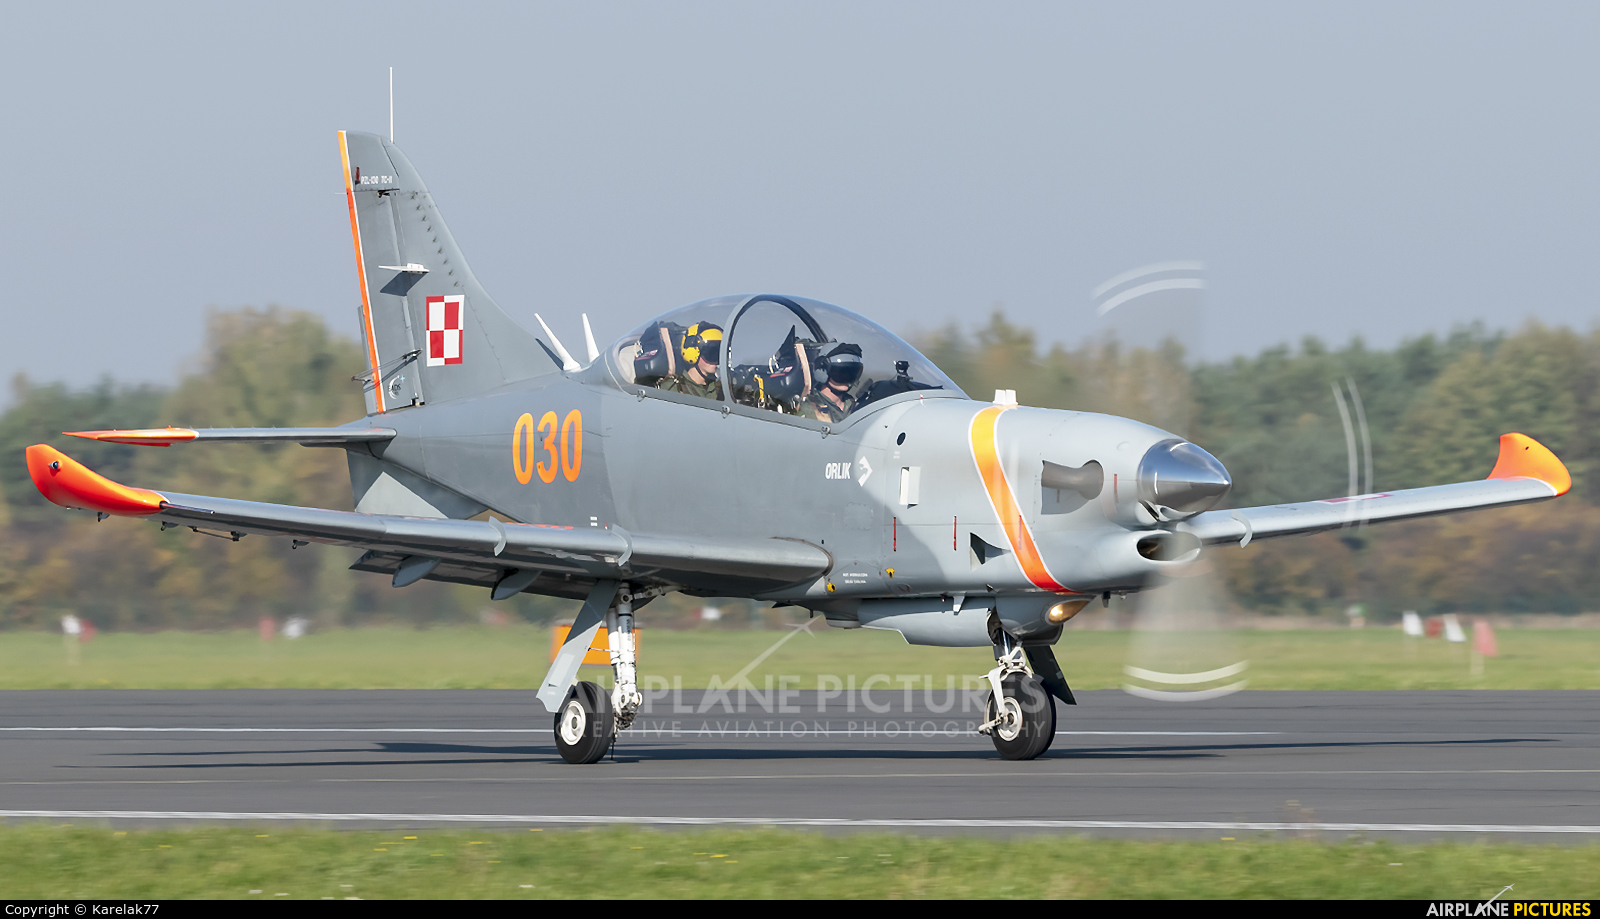 Poland - Air Force "Orlik Acrobatic Group" 030 aircraft at Dęblin